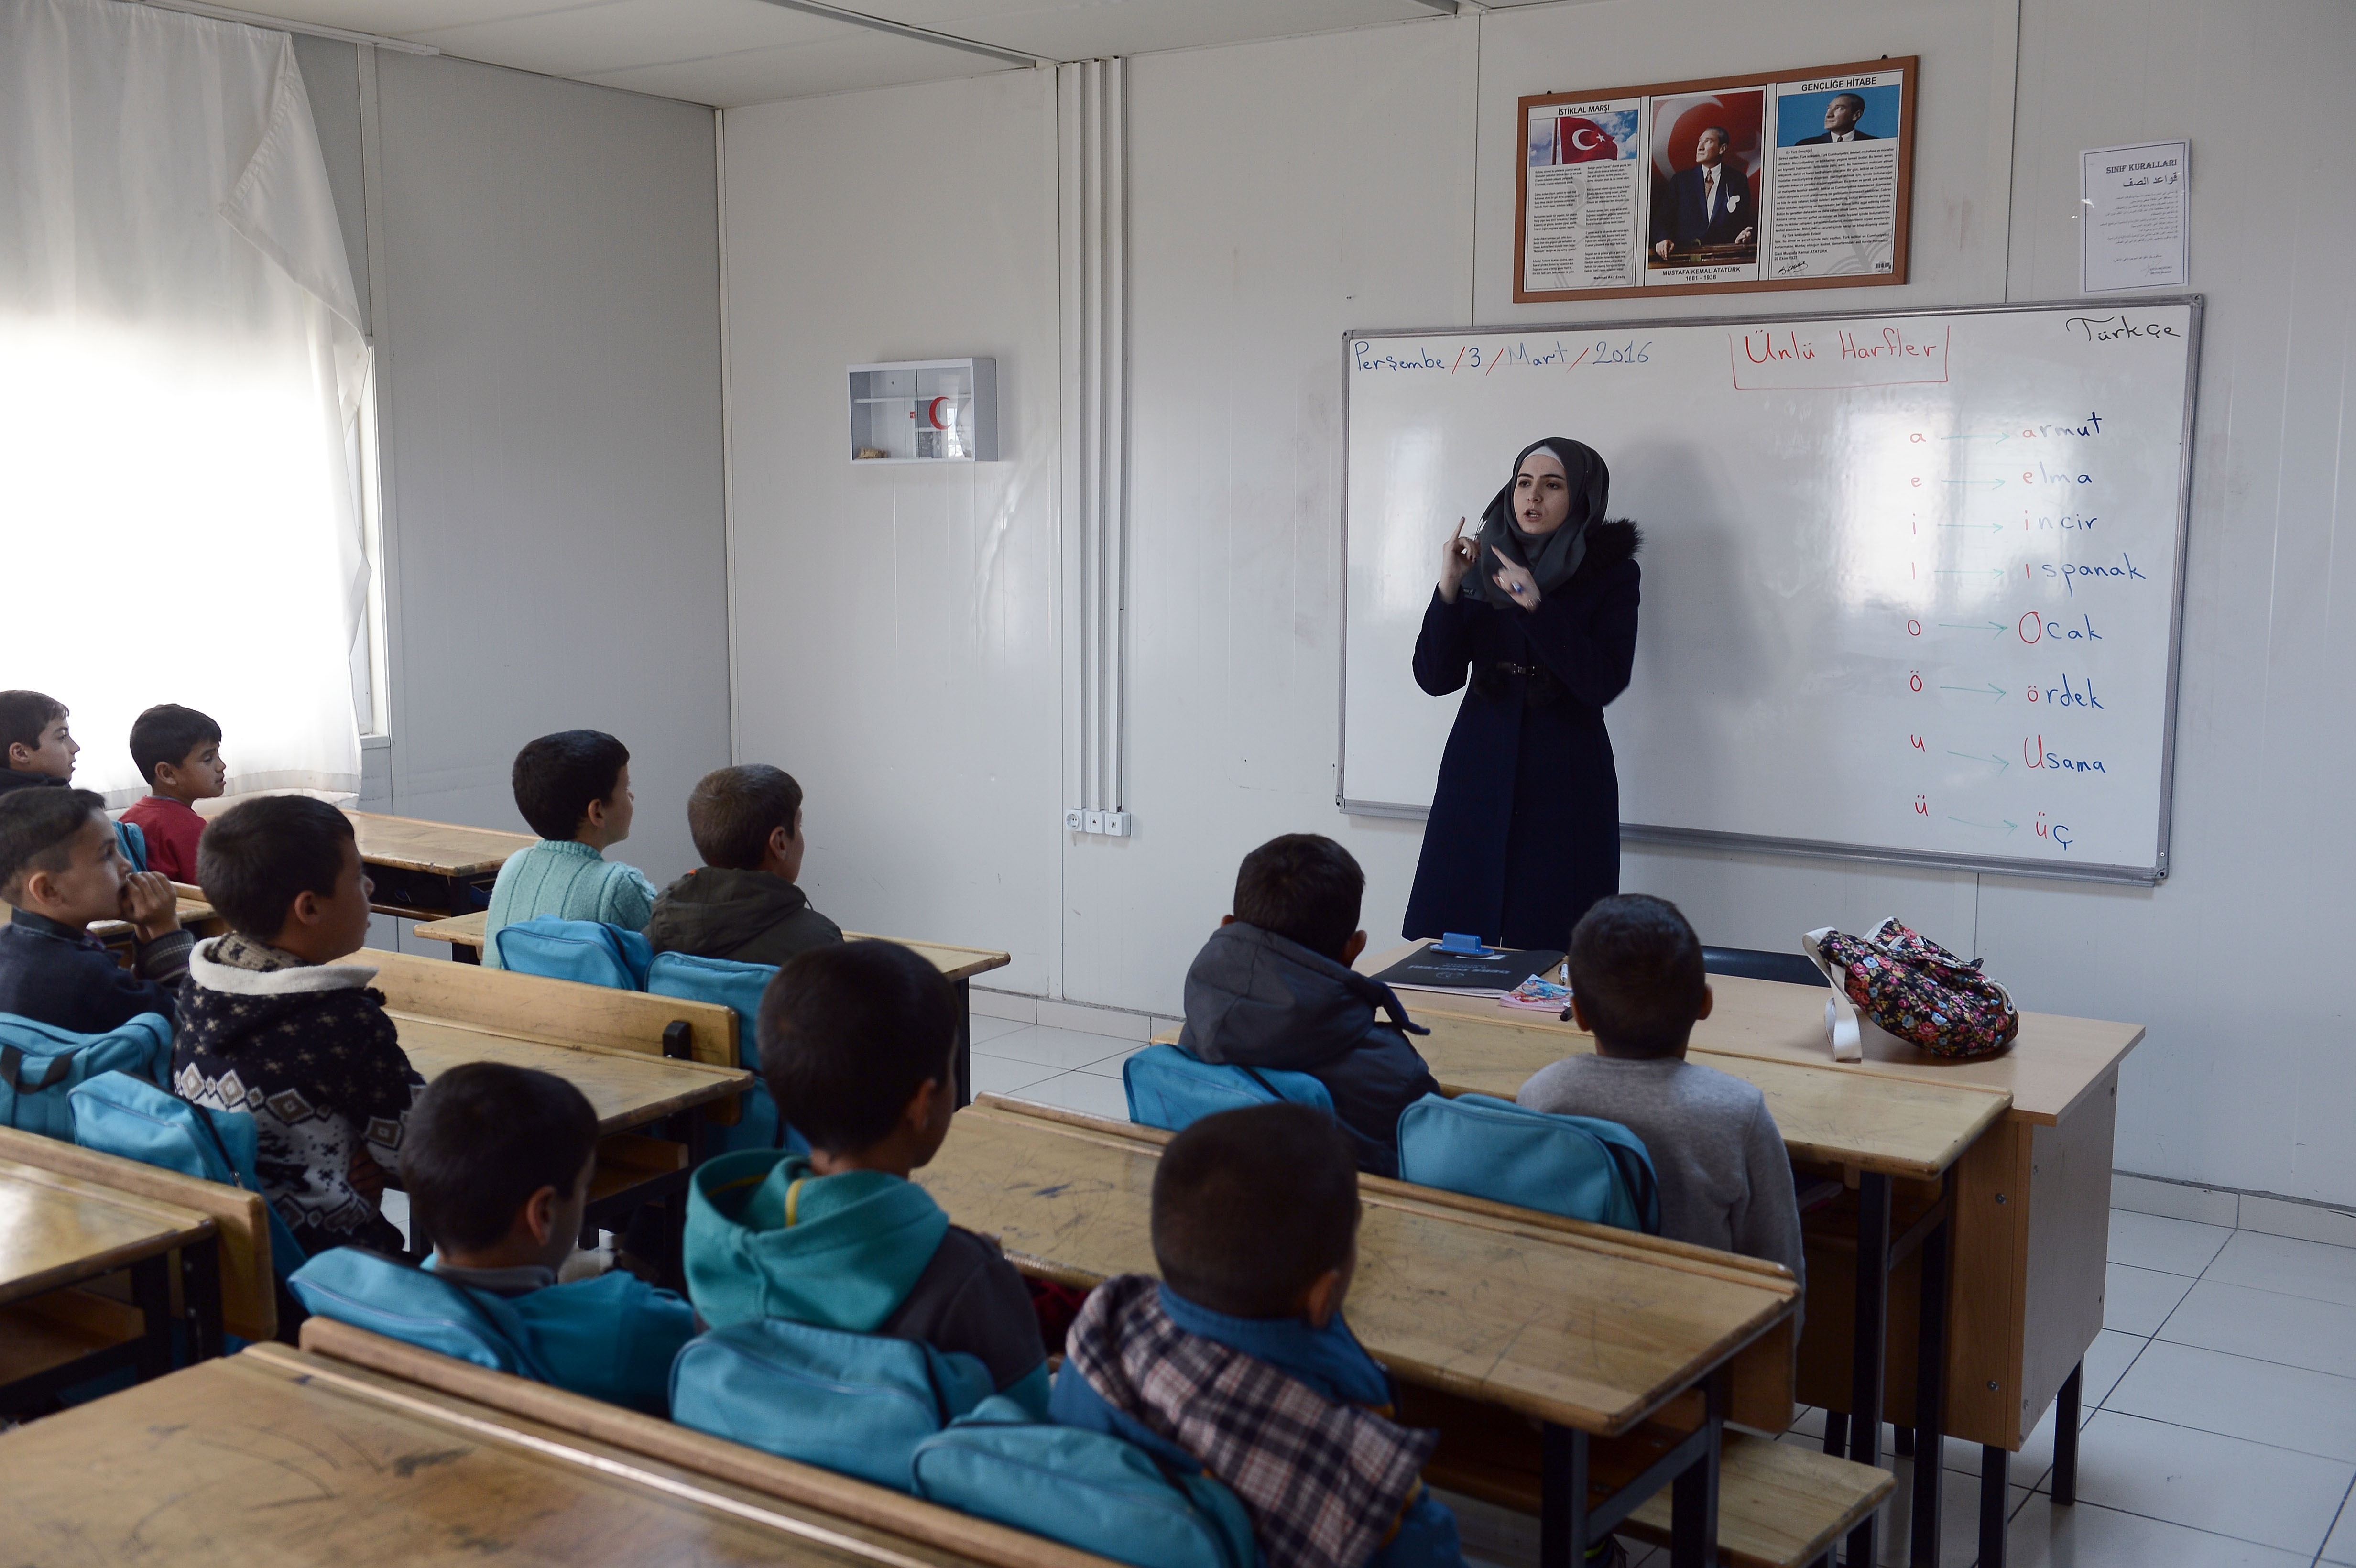 في تركيا الكثير من المدارس والمعاهد التعليمية الخاصة التي يمكن لك من خلالها الاستفادة والعمل